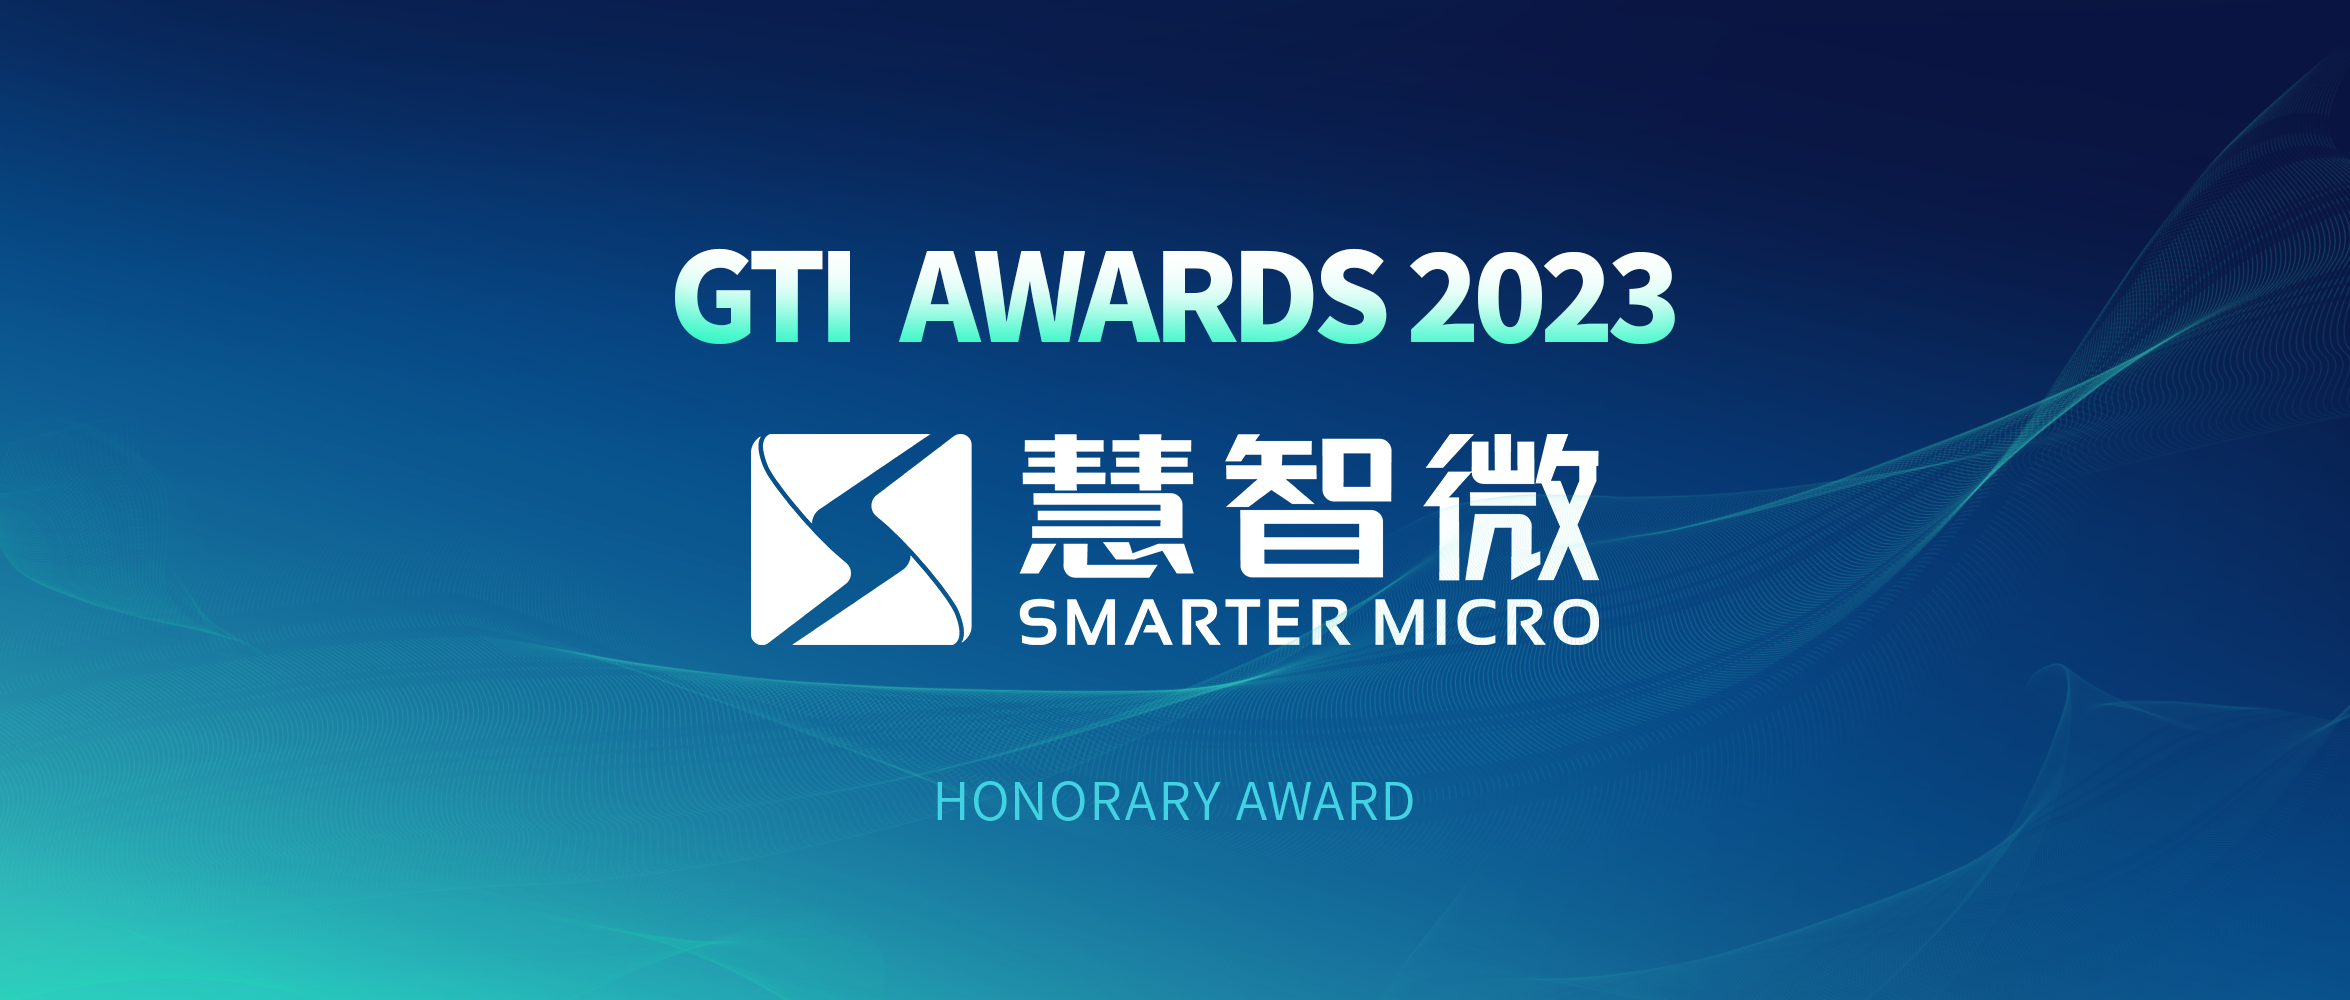 MWC 2023：慧智微再获GTI年度荣誉奖